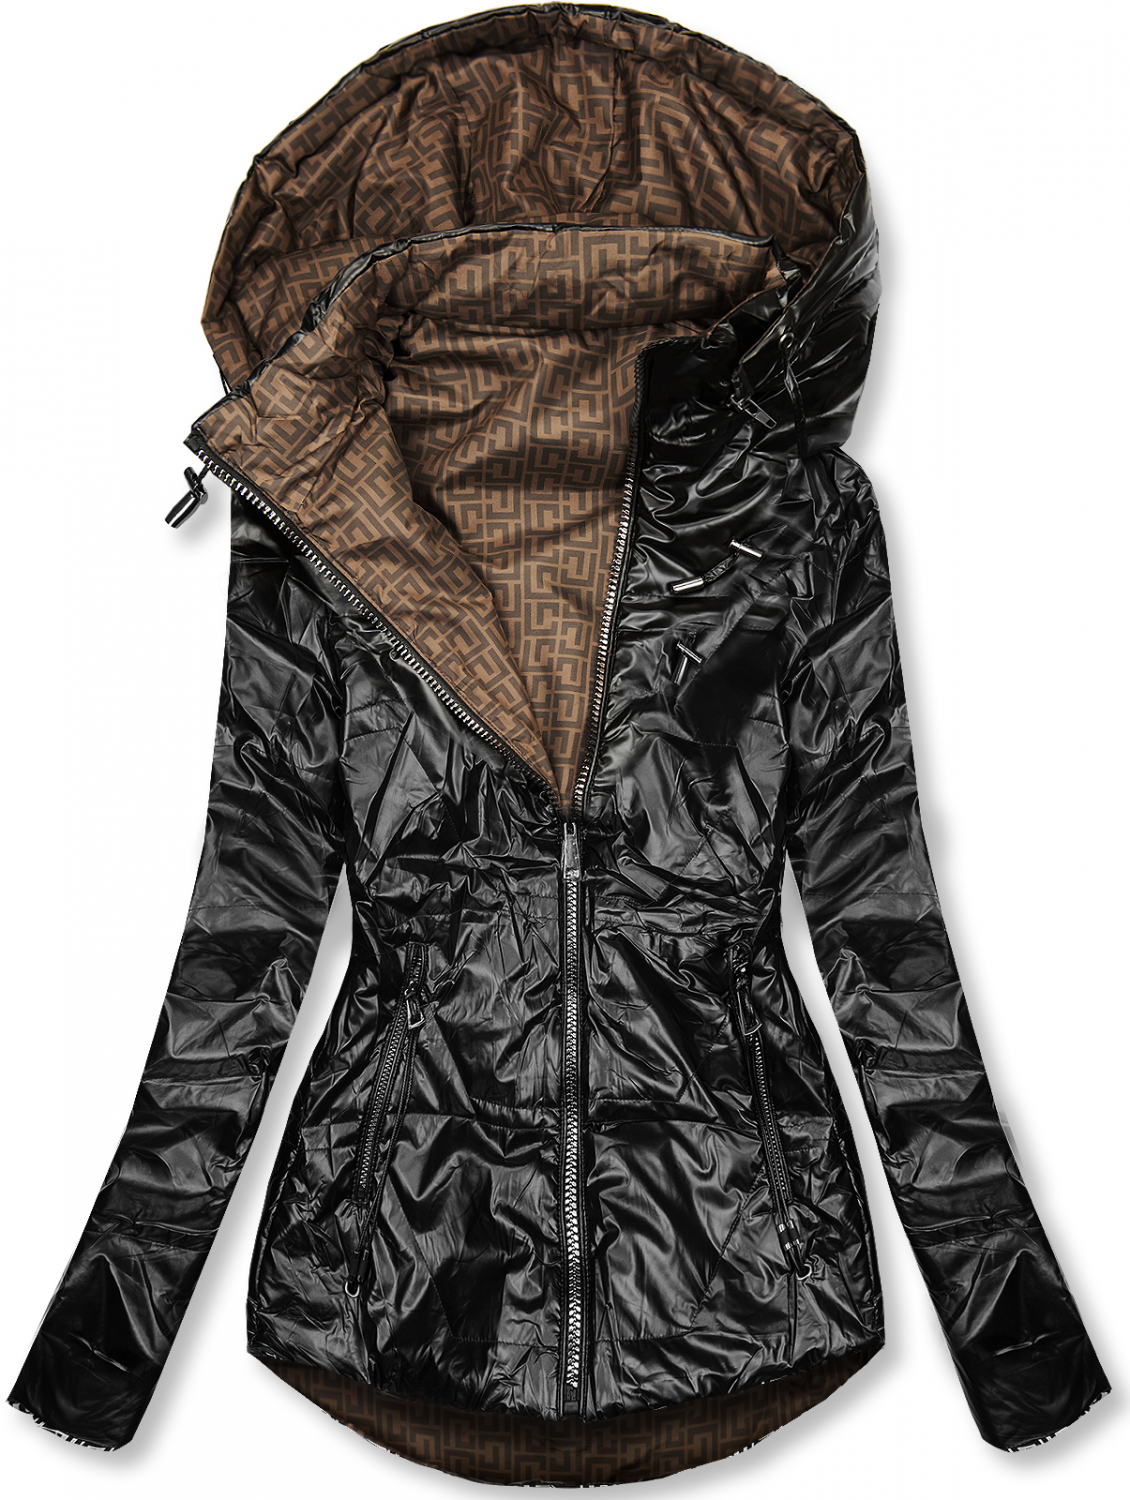 Čierna/hnedá lesklá obojstranná bunda.
- odopínateľná kapucňa
- zapínanie na zips
- kovové detaily v striebornej farbe
- dve predné vrecká
- materiál: 100% polyester, podšívka: 100% polyester